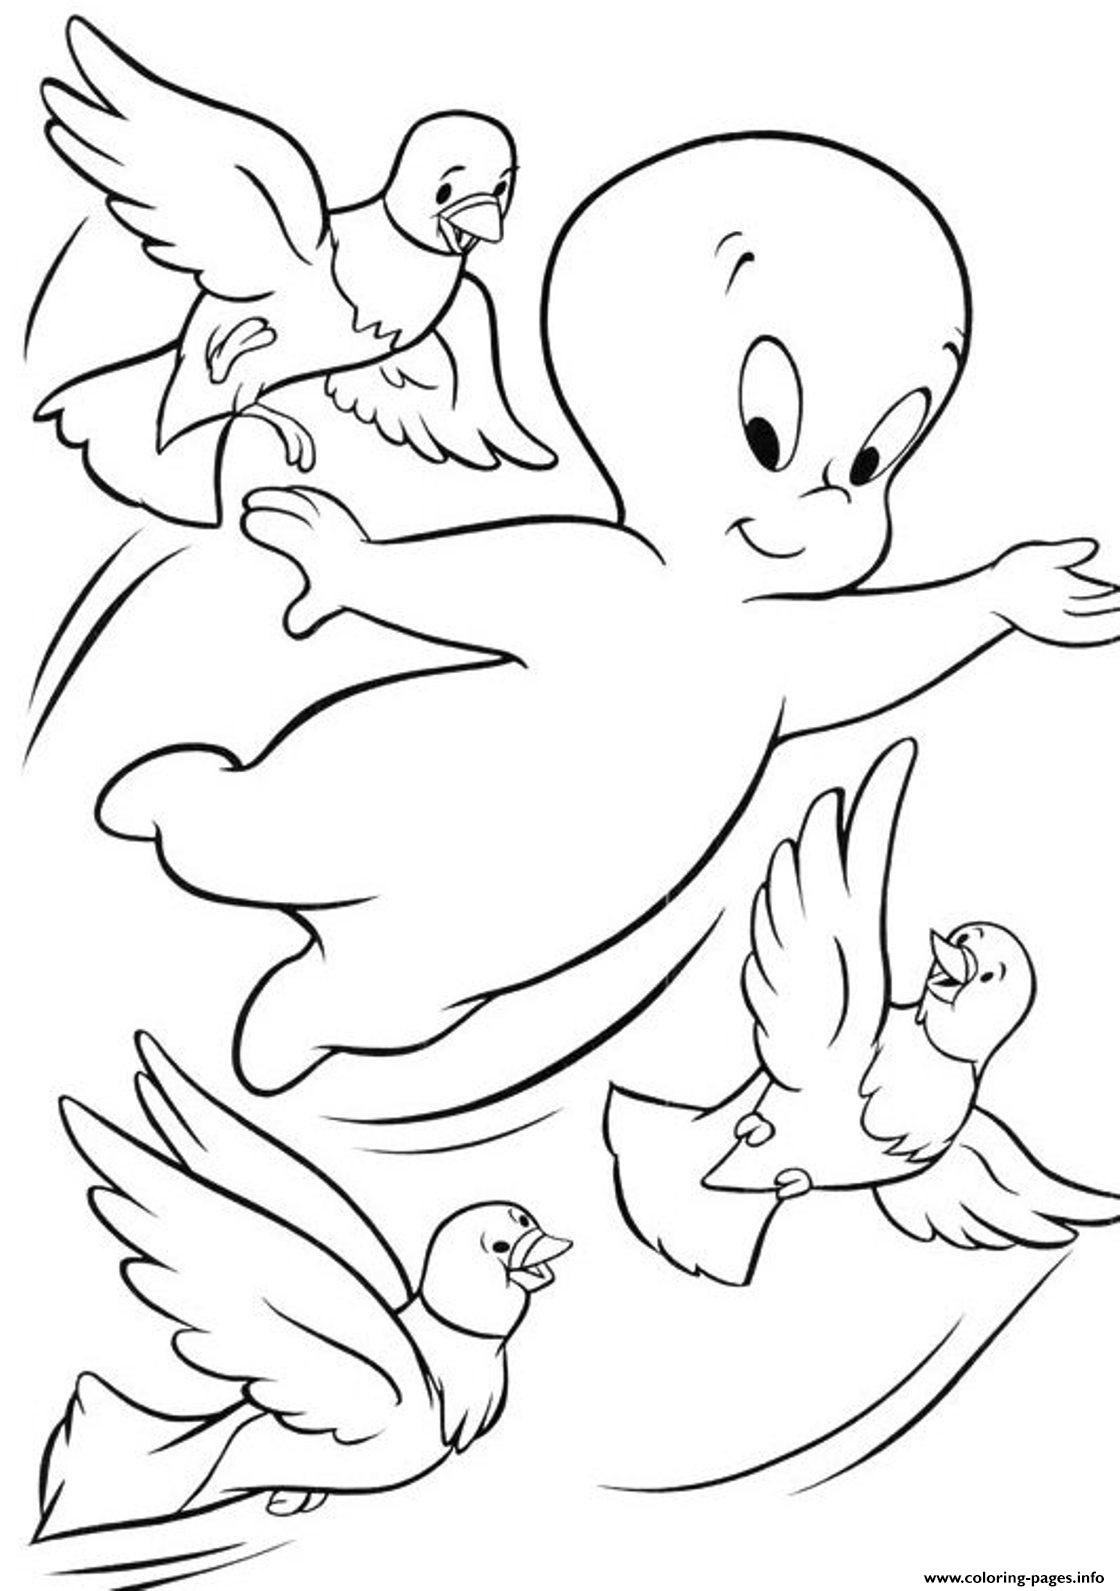 Birds And Casper Ghost S For Kidsa7e2 coloring